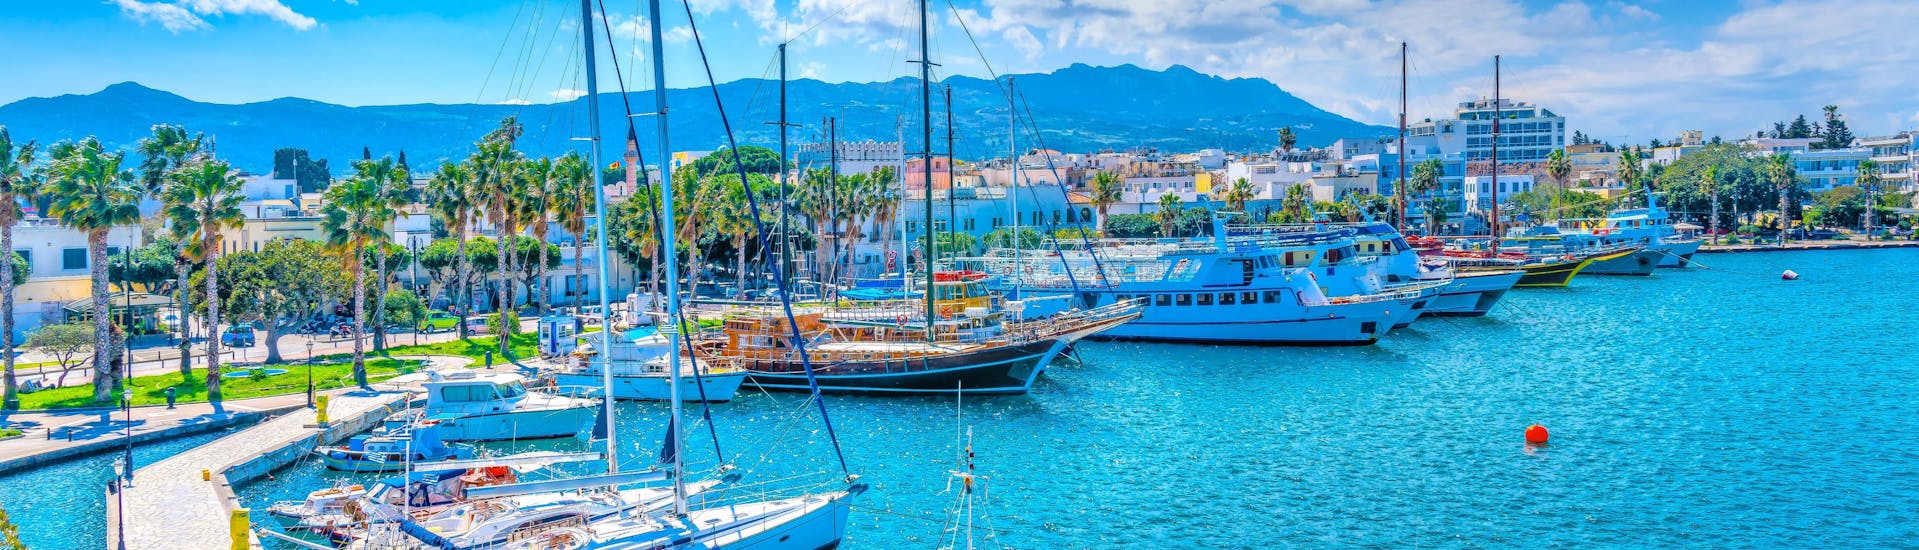 Foto van de haven van Kos, Griekenland, een populaire bestemming voor boottochten.